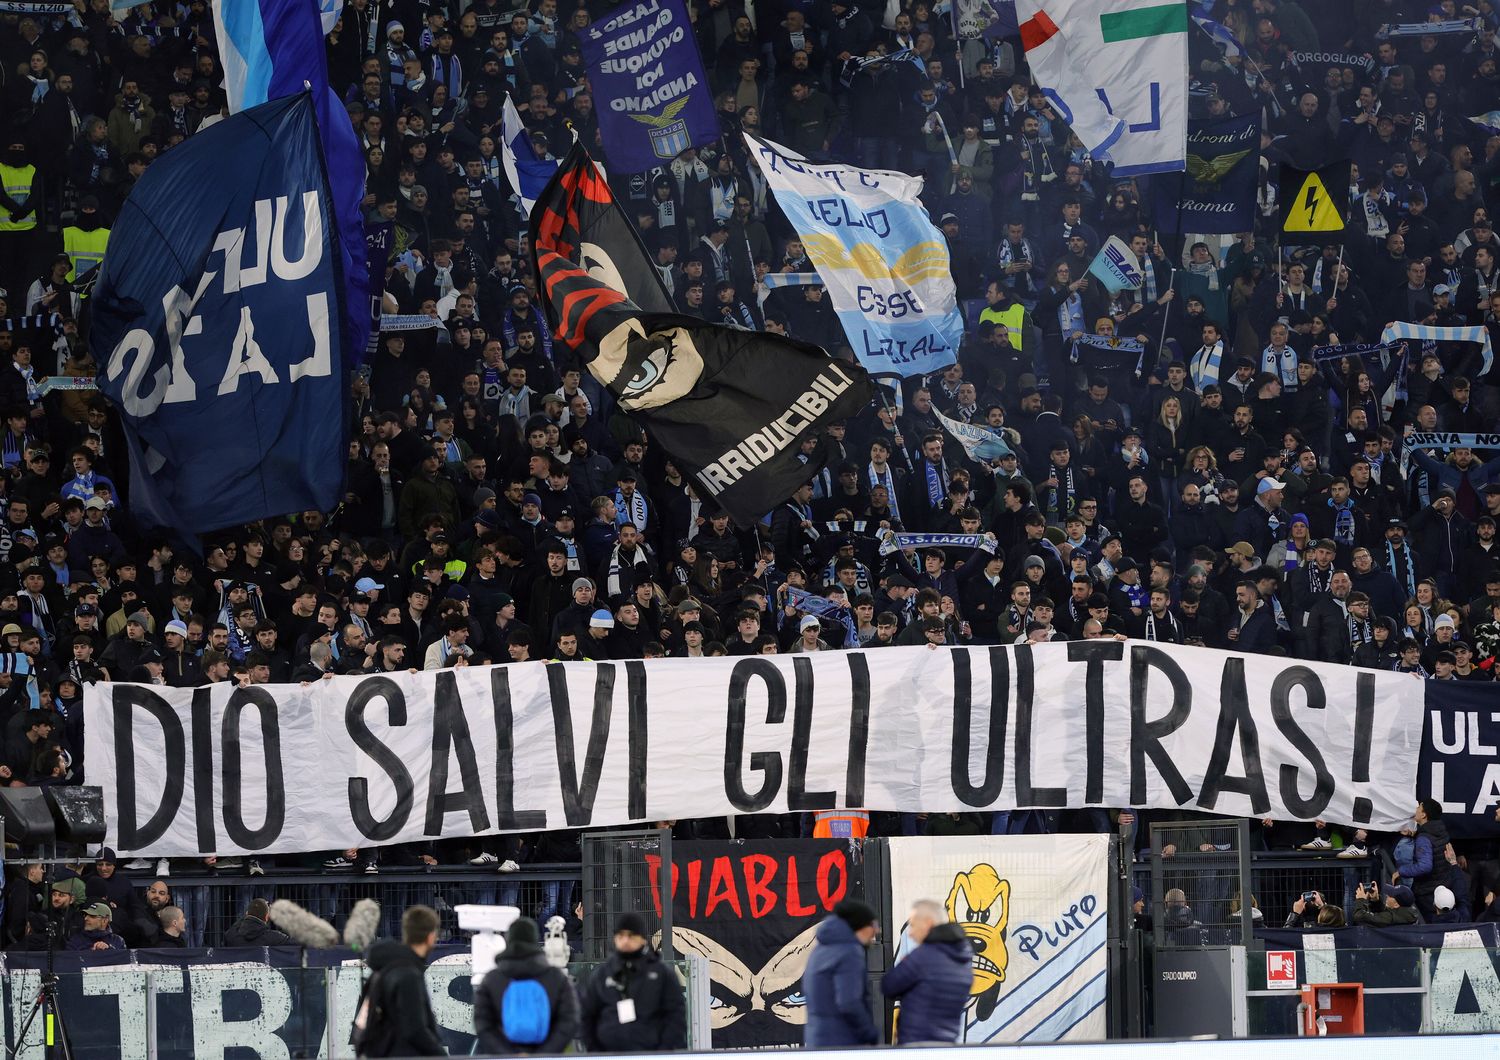 La curva Nord dei tifosi della Lazio